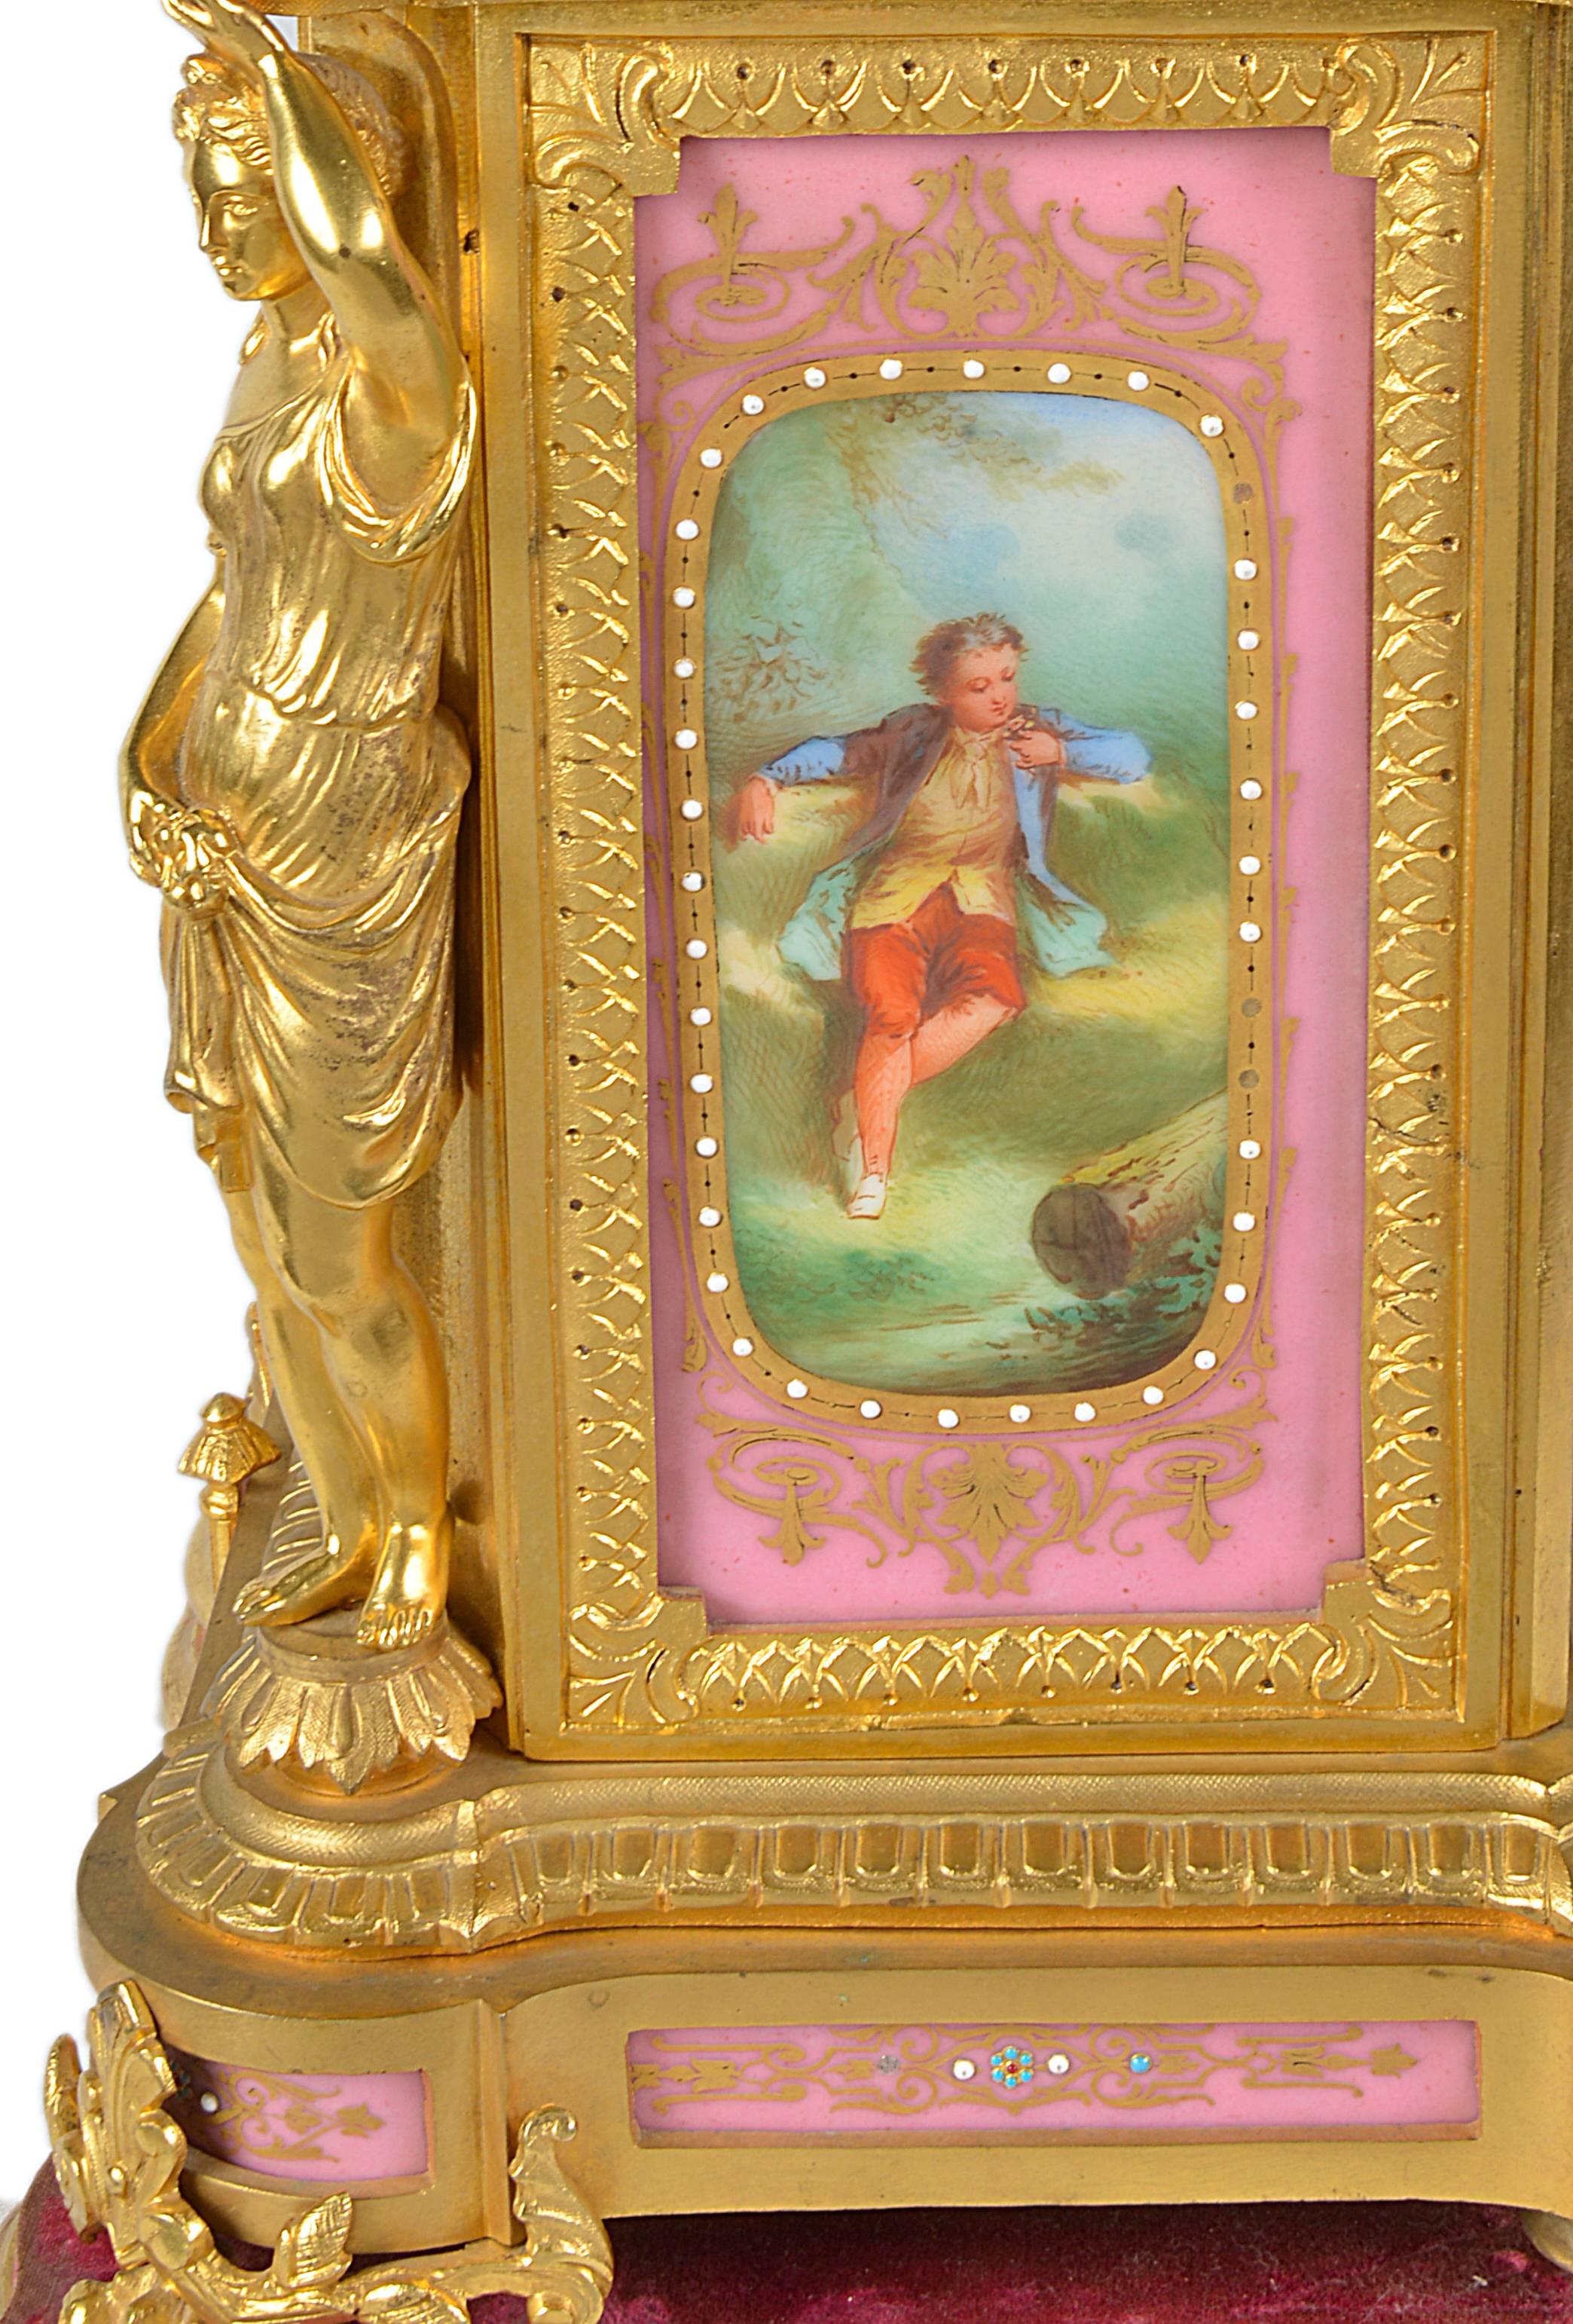 Eine sehr gute Qualität Französisch 19. Jahrhundert vergoldet Ormolu und rosa Sèvres Porzellan Kaminsims Uhr. Mit Monopodienstützen, einer Putte, die eine Urne trägt, und klassischen romantischen Szenen auf dem Ziffernblatt. Ein achttägiges Uhrwerk,